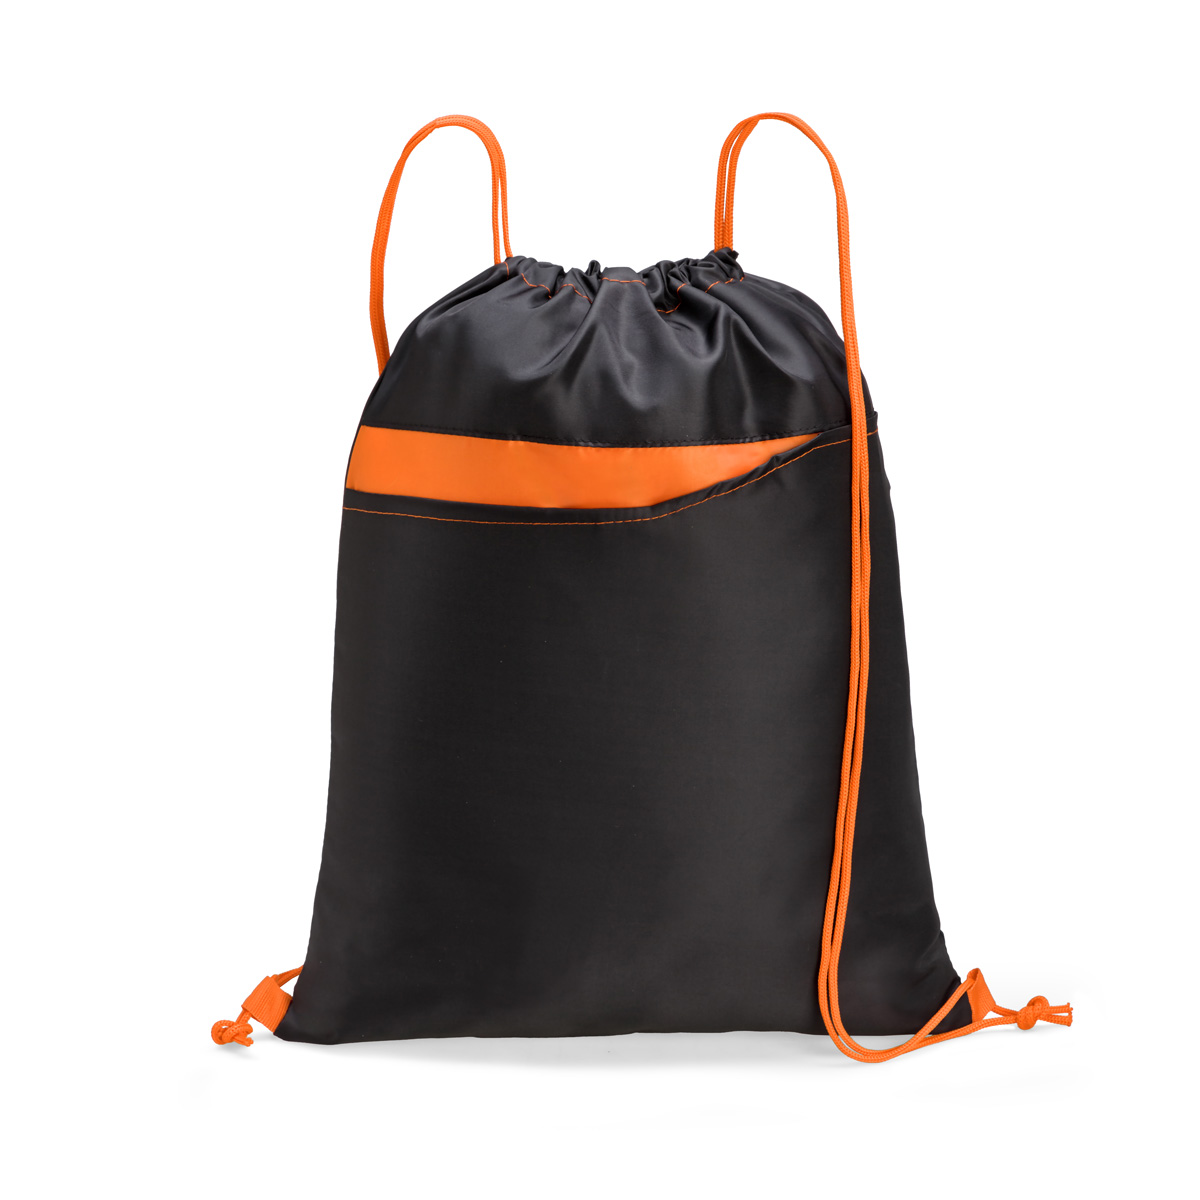 Tahoe Drawstring Bag Product Image